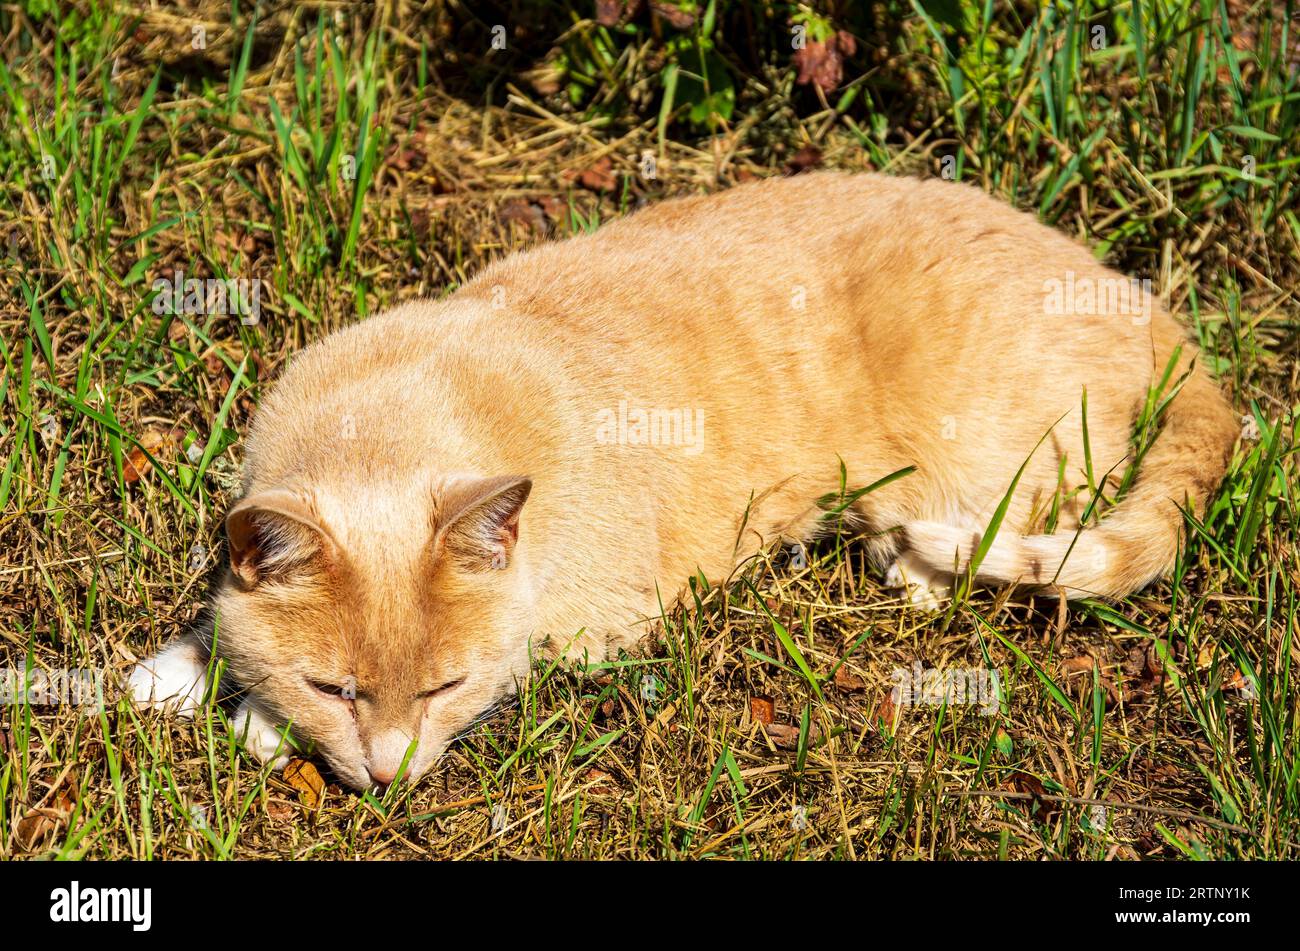 Un chat domestique aux cheveux roux se trouve dans l'herbe et prend le soleil. Eine rothaarige Hauskatze liegt im gras und sonnt sich. Banque D'Images